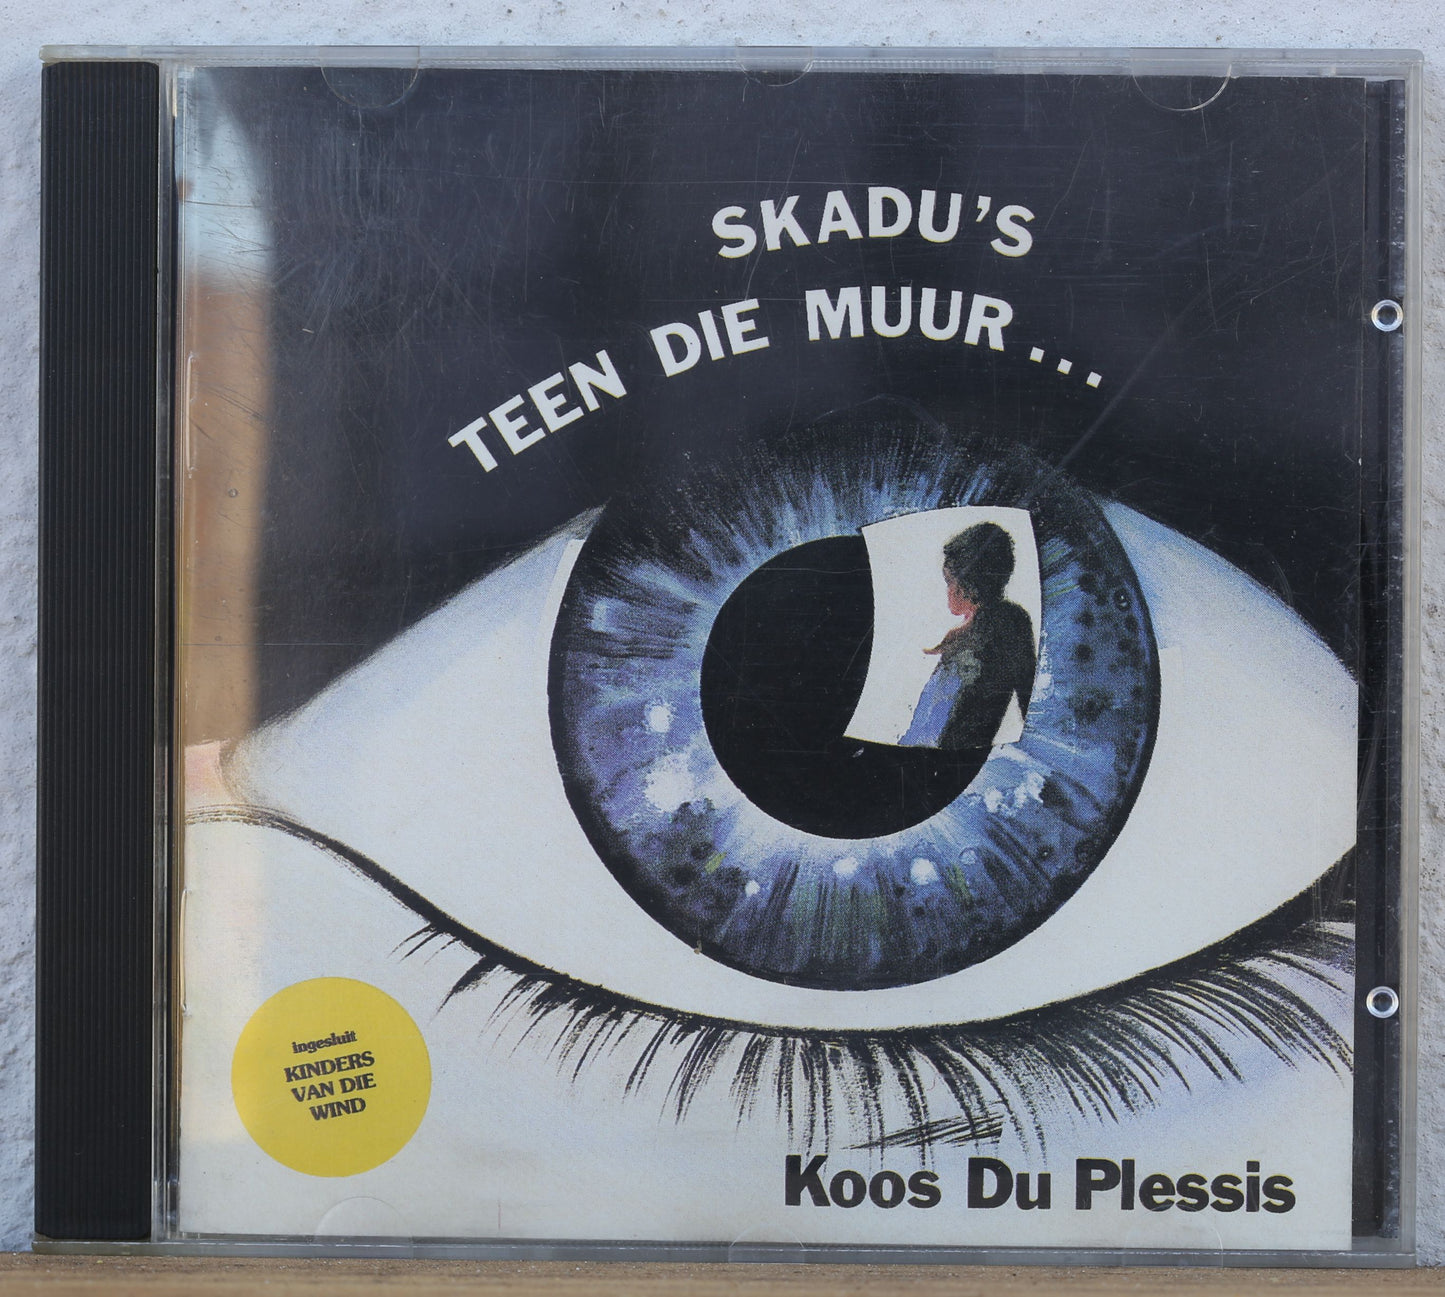 Koos Du Plessis - Skadu's teen die muur (cd)